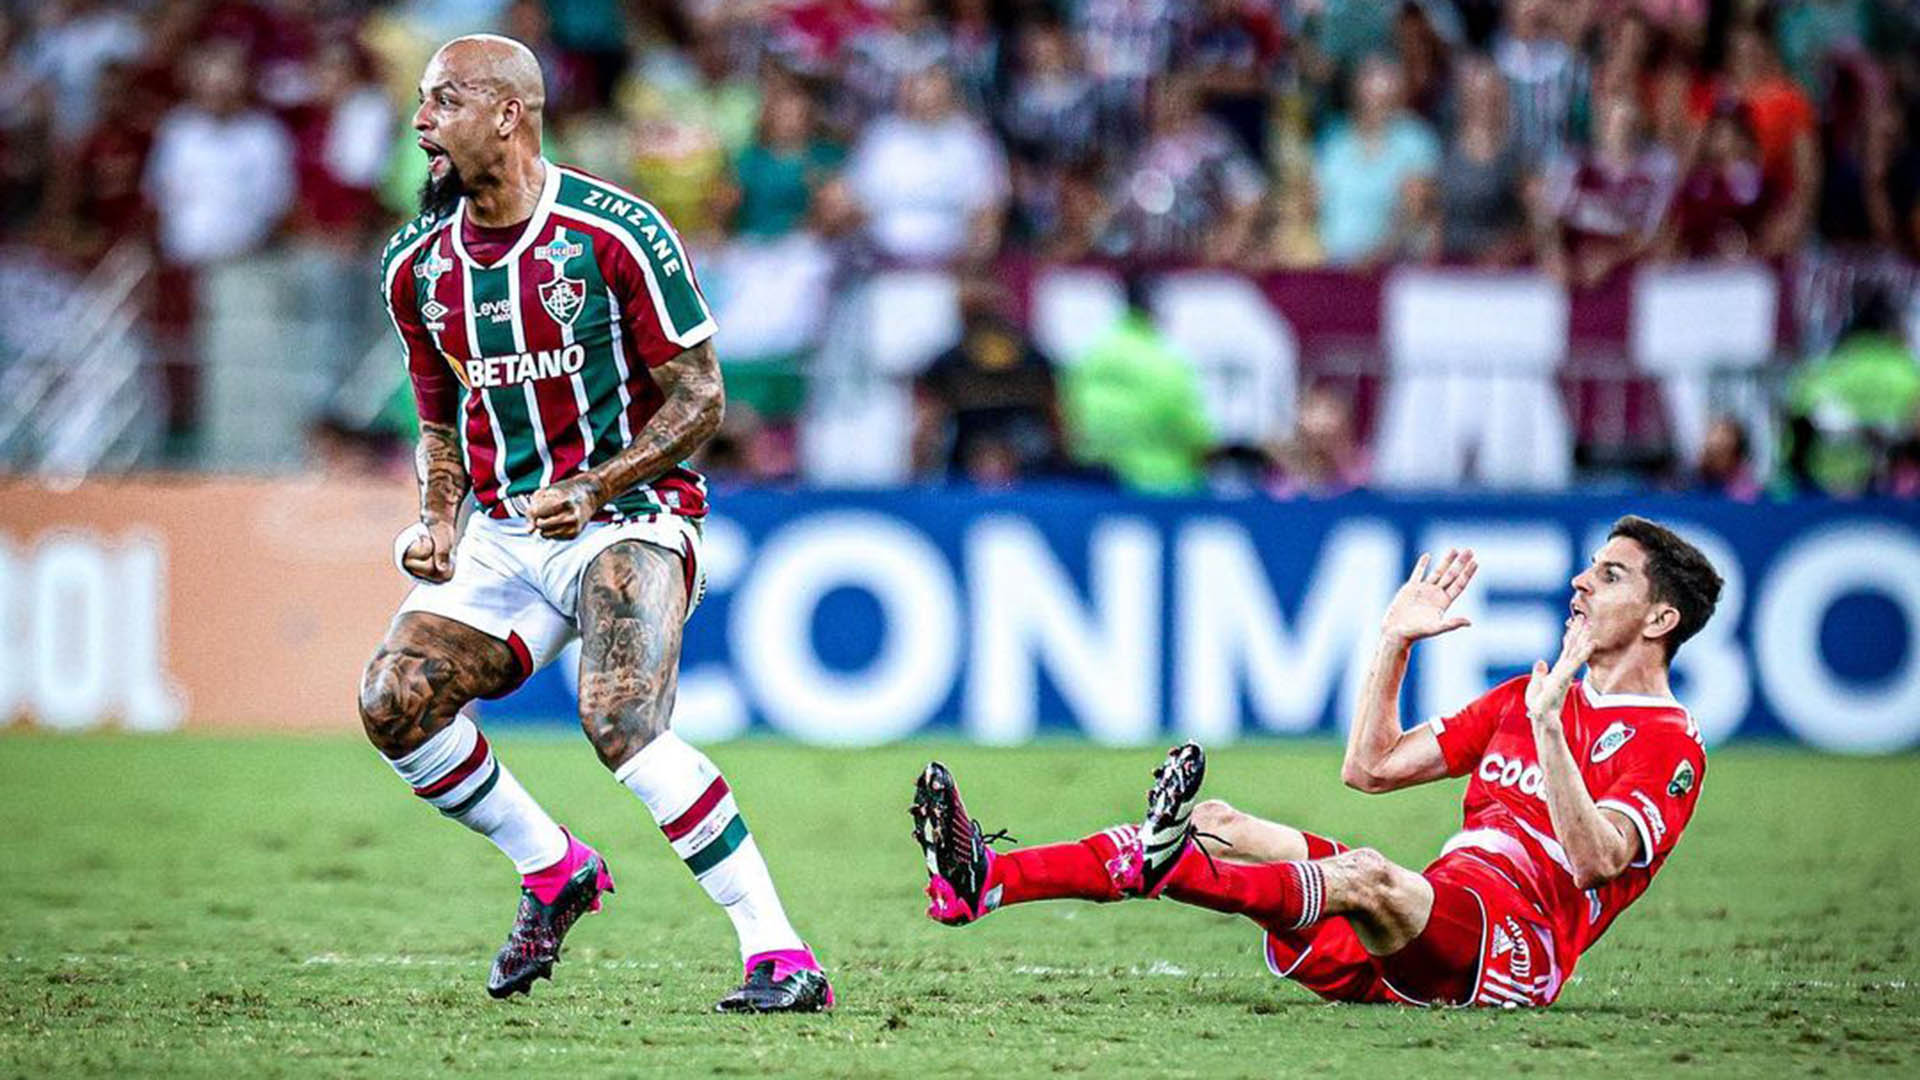 La burla de Felipe Melo a River y el meme que le dedicó Fluminense tras la goleada en la Copa Libertadores